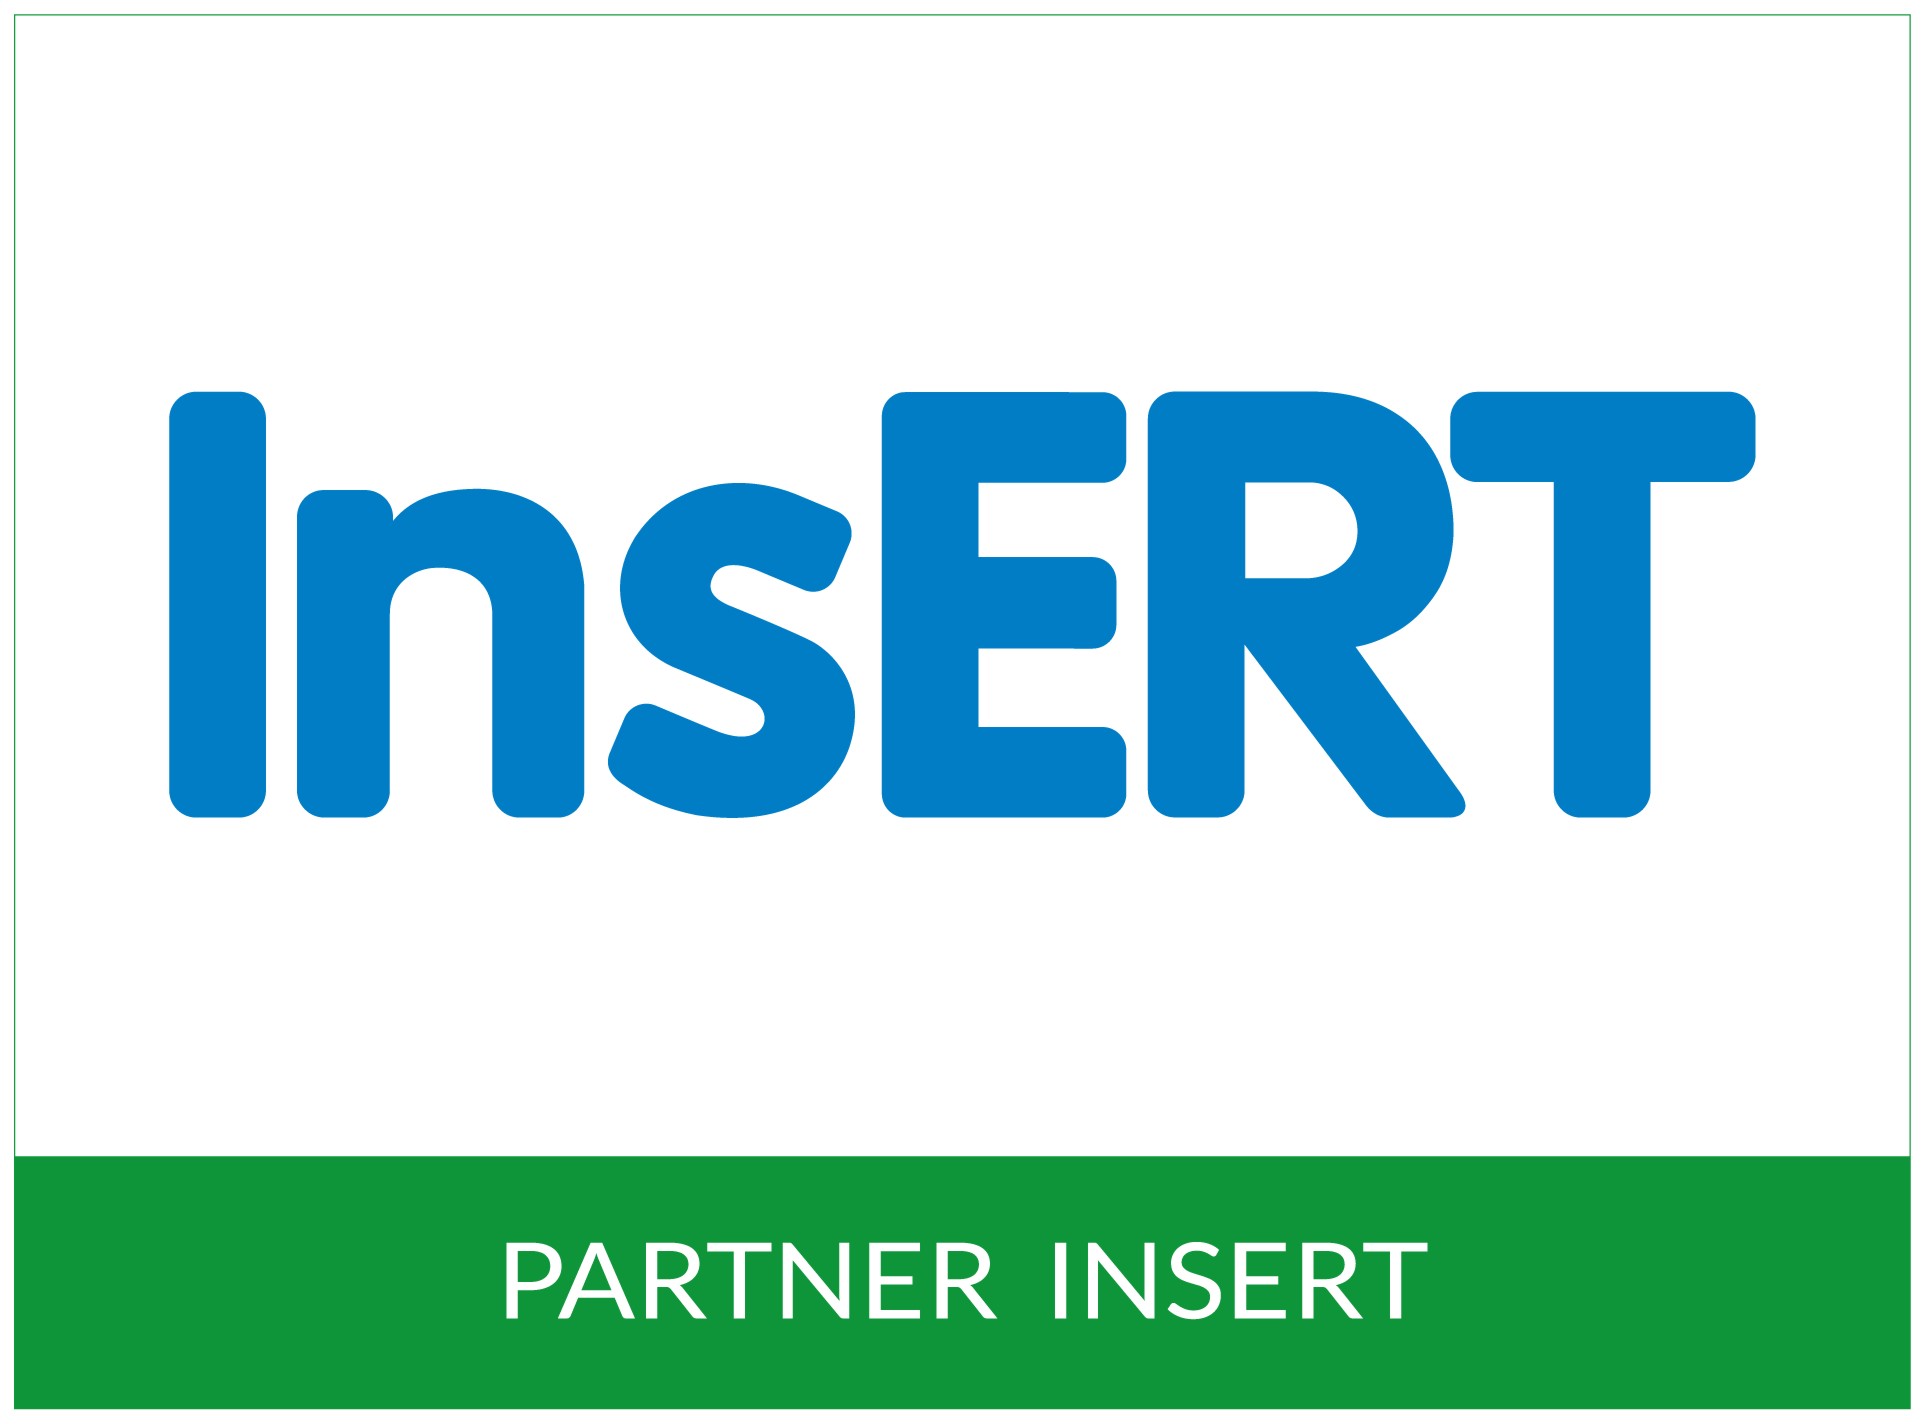 partner insert logo